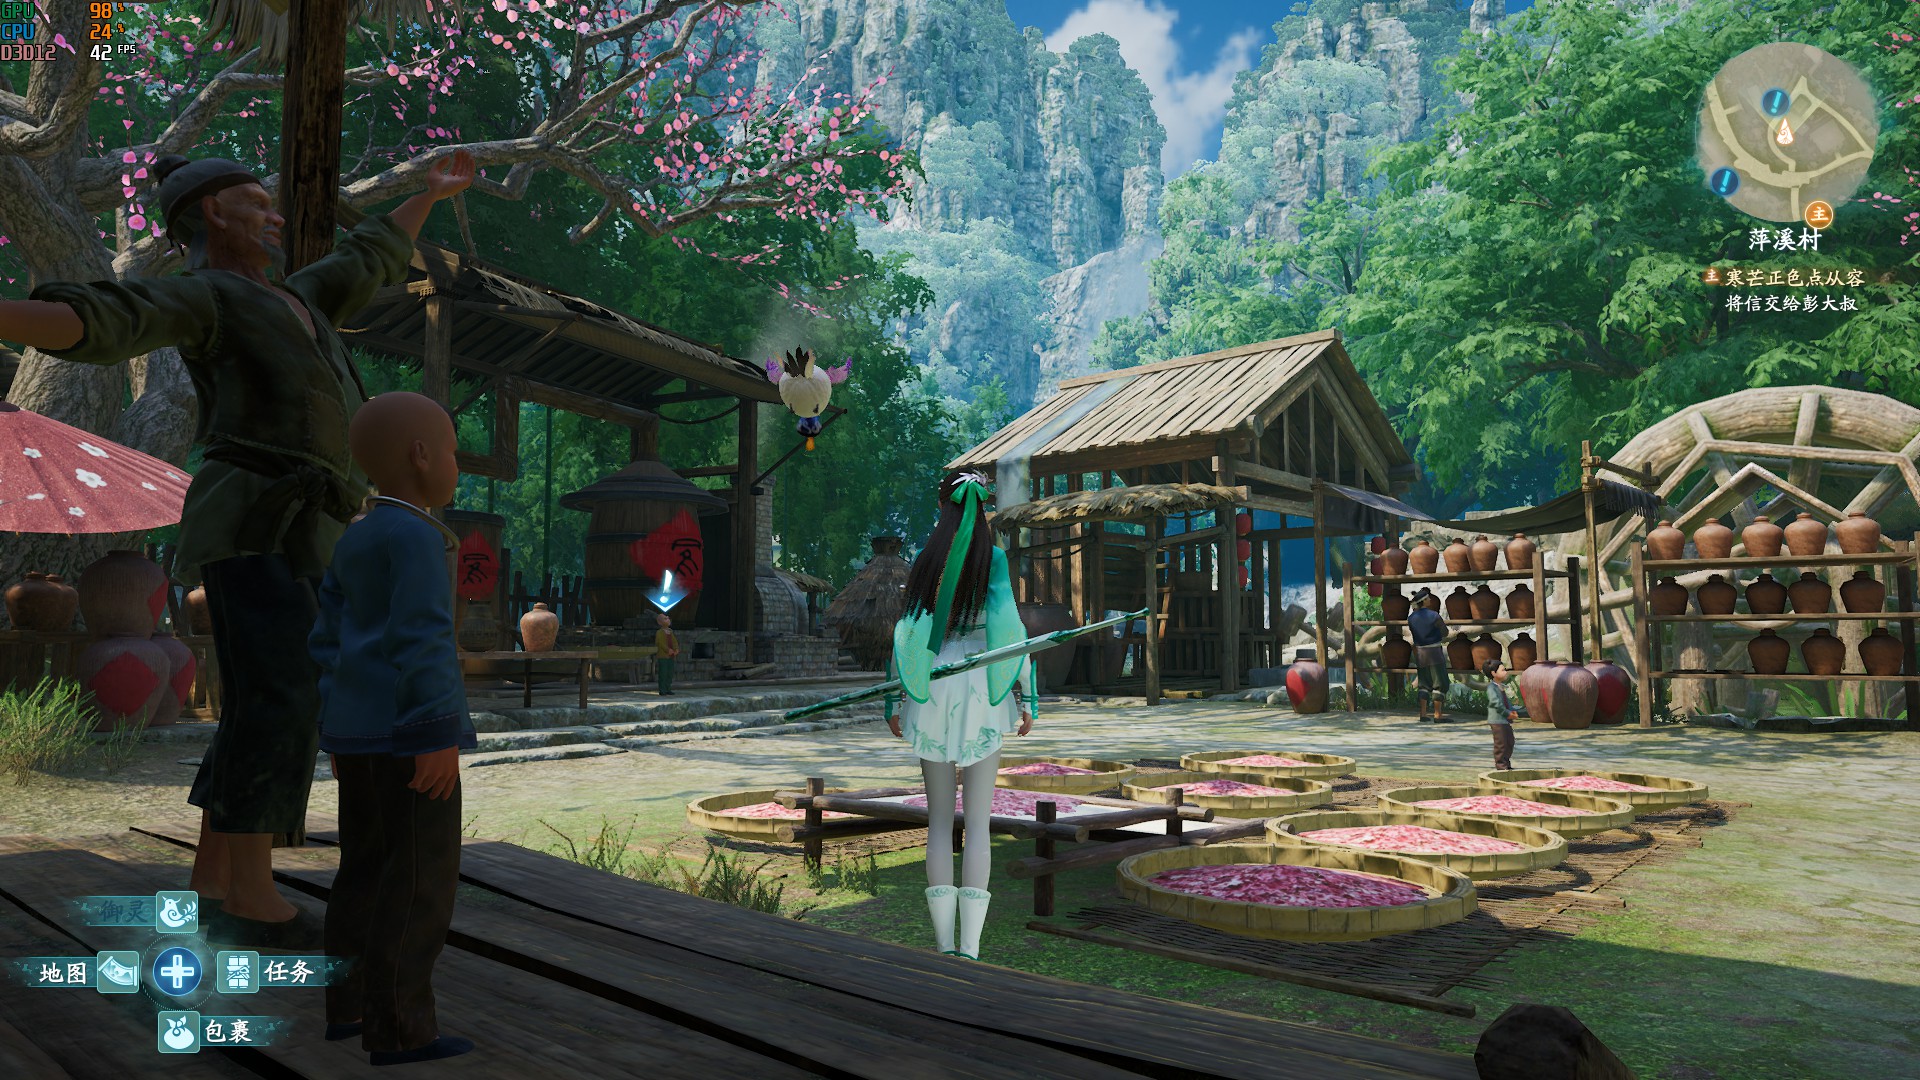 《仙劍奇俠傳7》畫面各項設置視覺效果對比 - 第20張